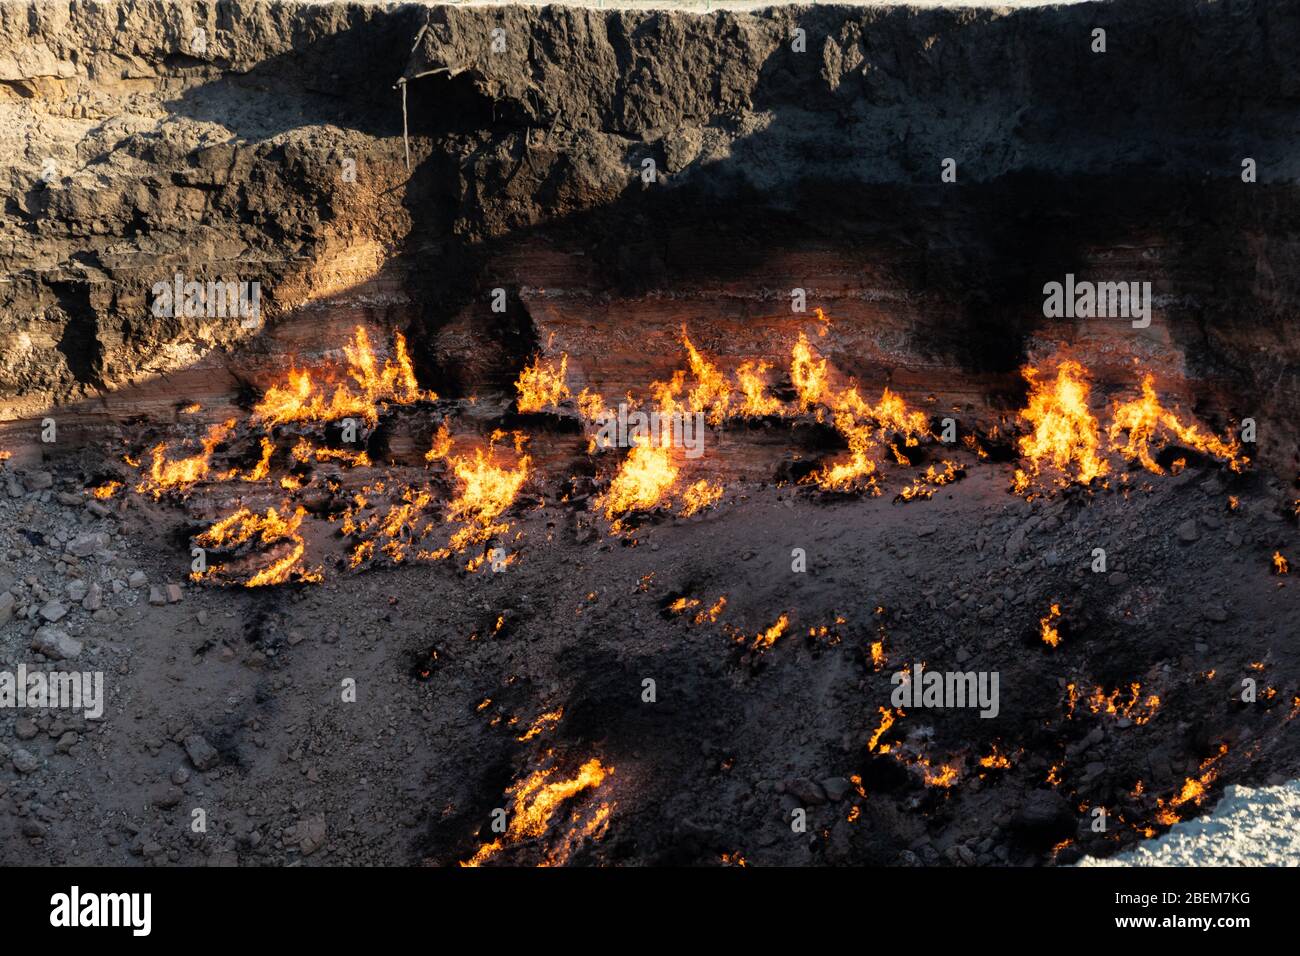 El cráter Darvasa, también conocido como la puerta del Infierno, el cráter de gas en llamas en Darvaza (Darvasa), Turkmenistán Foto de stock